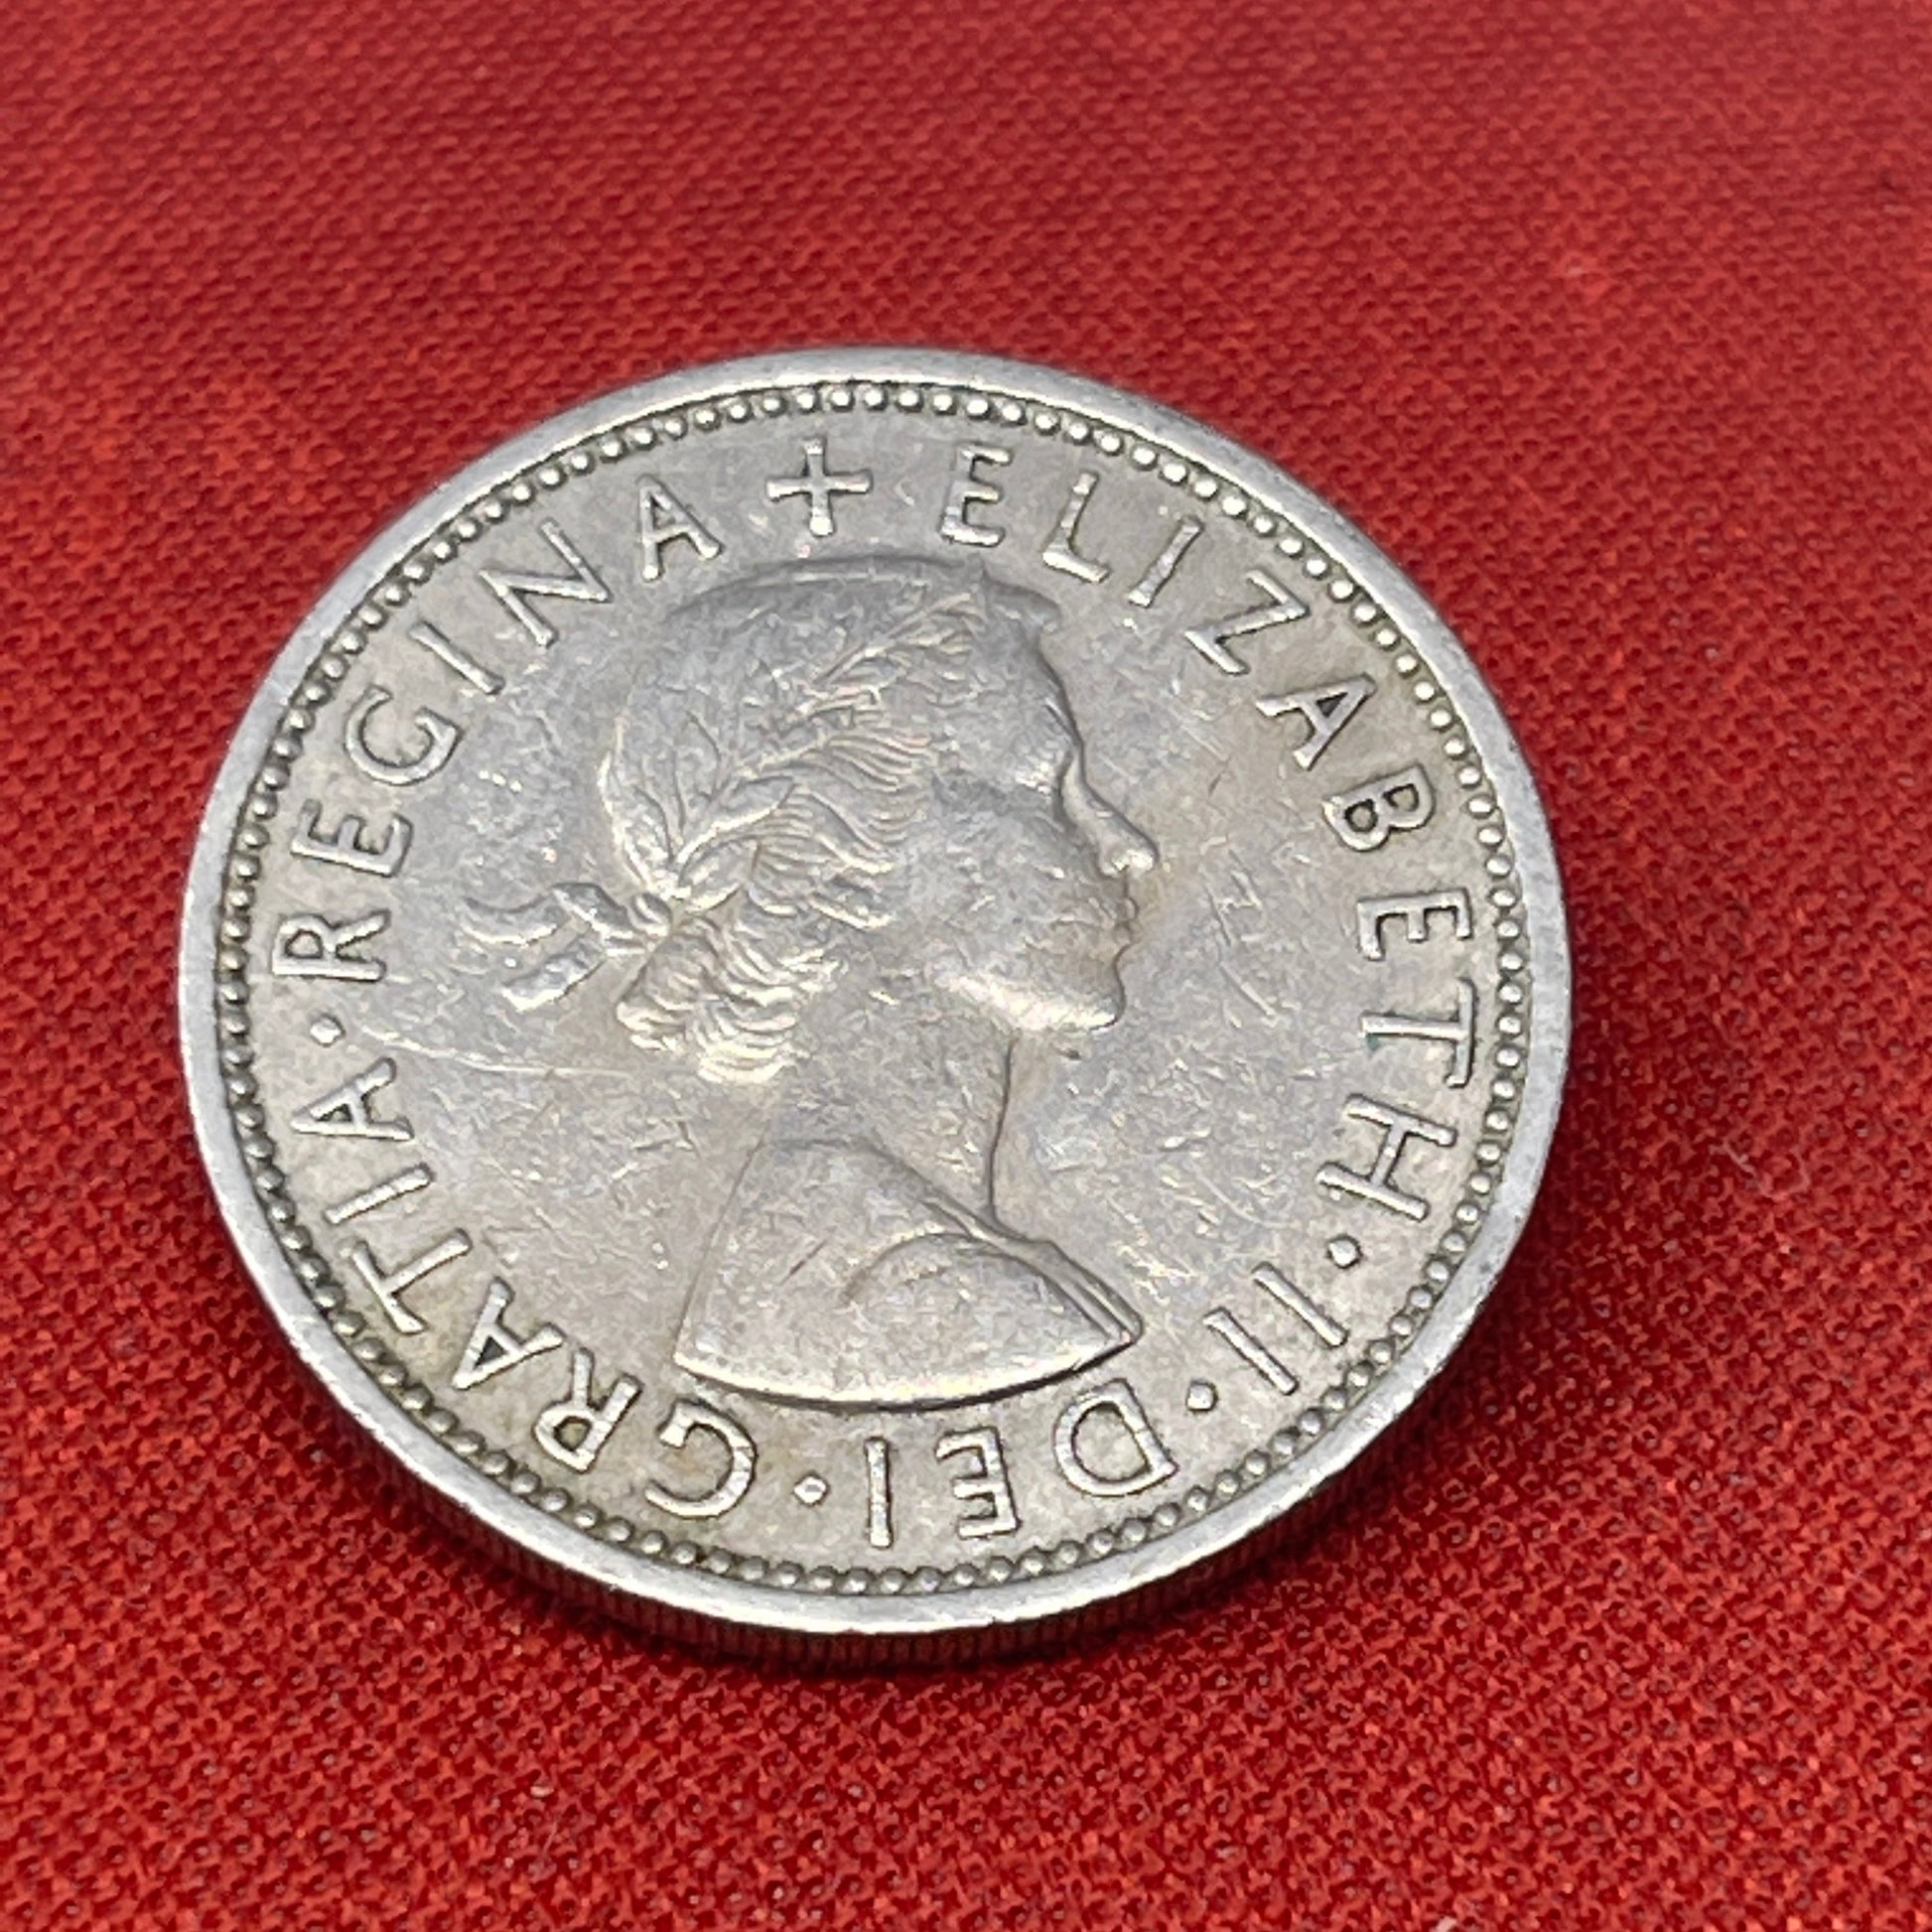 Queen Elizabeth II Two Shilling 1967